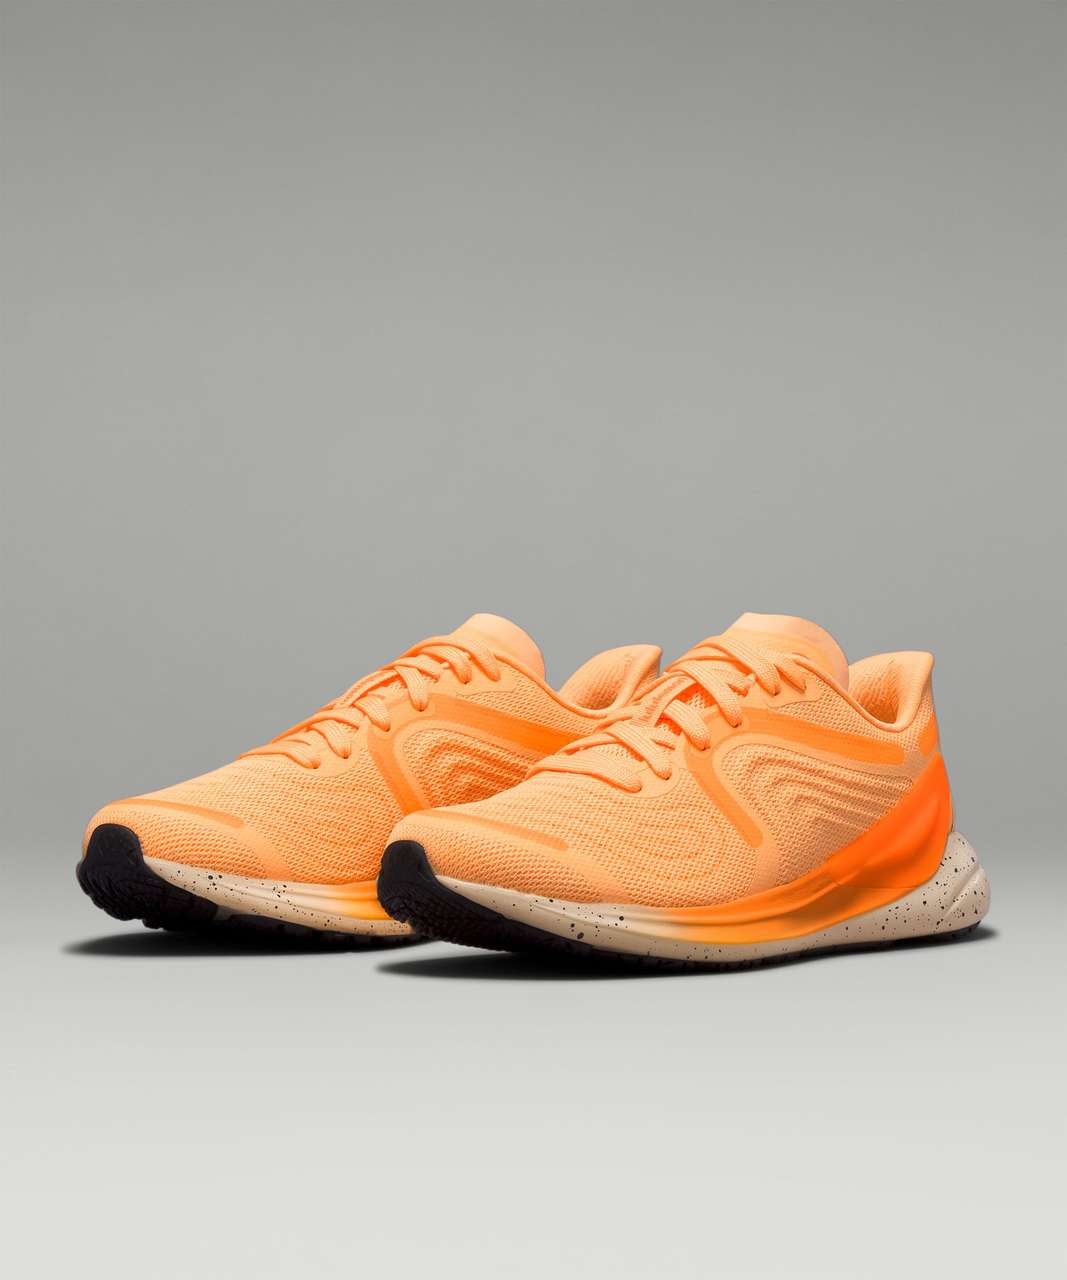 Lululemon Blissfeel 2 Womens Running Shoe - Florid Orange / Highlight Orange / Misty Shell